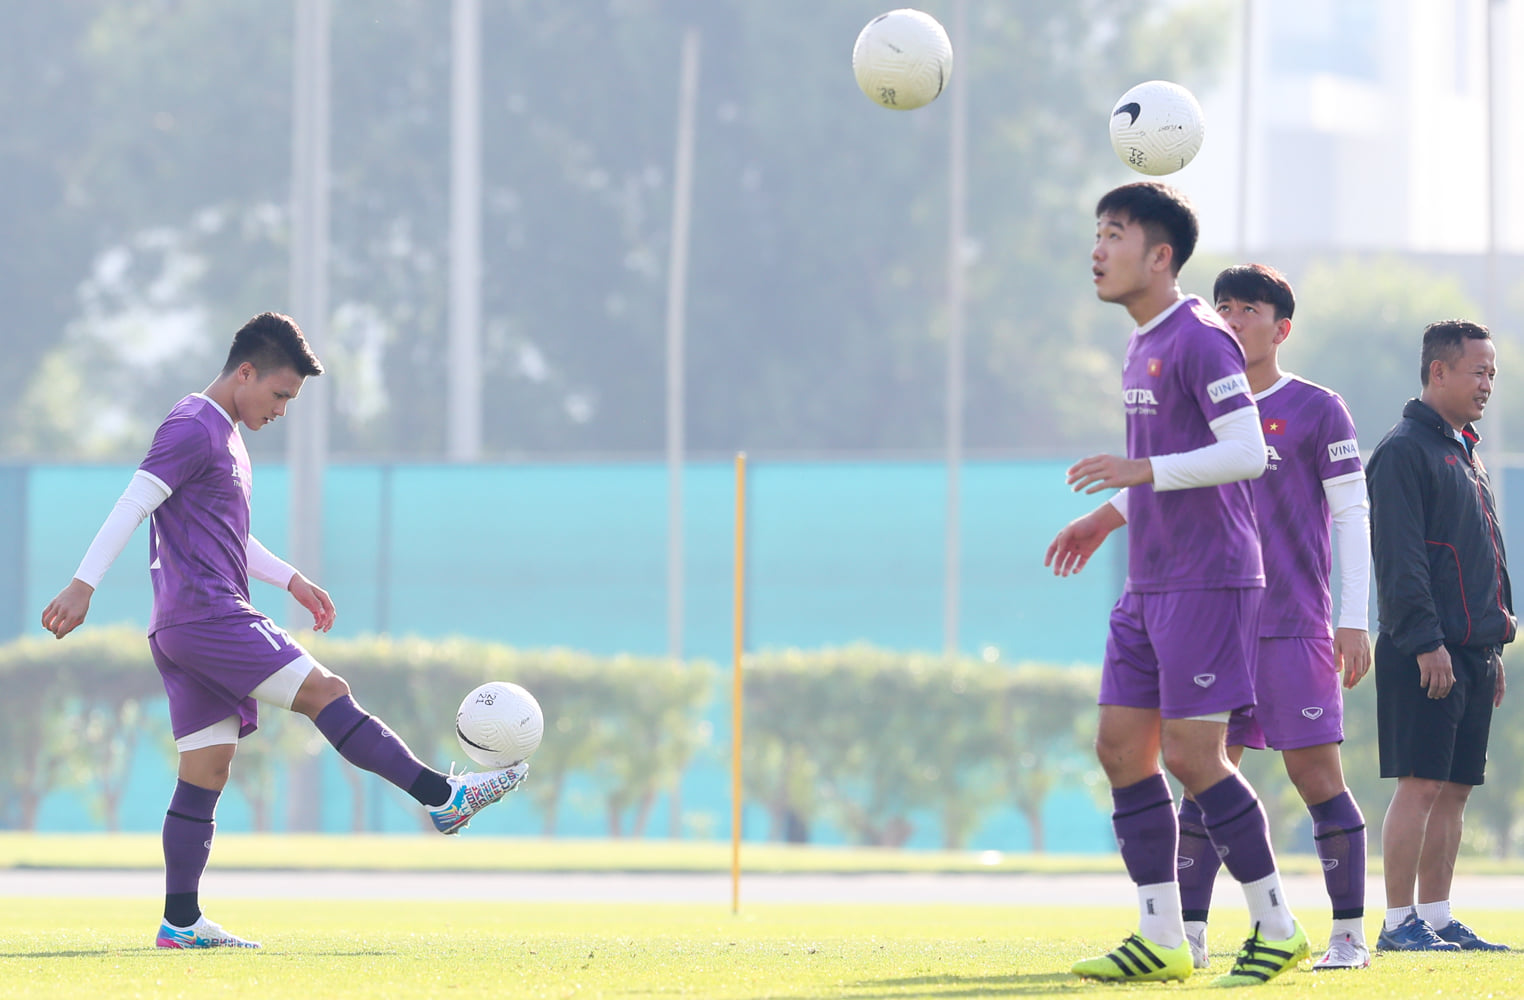 Việt Nam vs Indonesia, lịch thi đấu vòng loại World Cup 2022, trực tiếp bóng đá hôm nay, vtv6, bảng xếp hạng bảng G vòng loại World Cup 2022 khu vực châu Á, vn vs indo